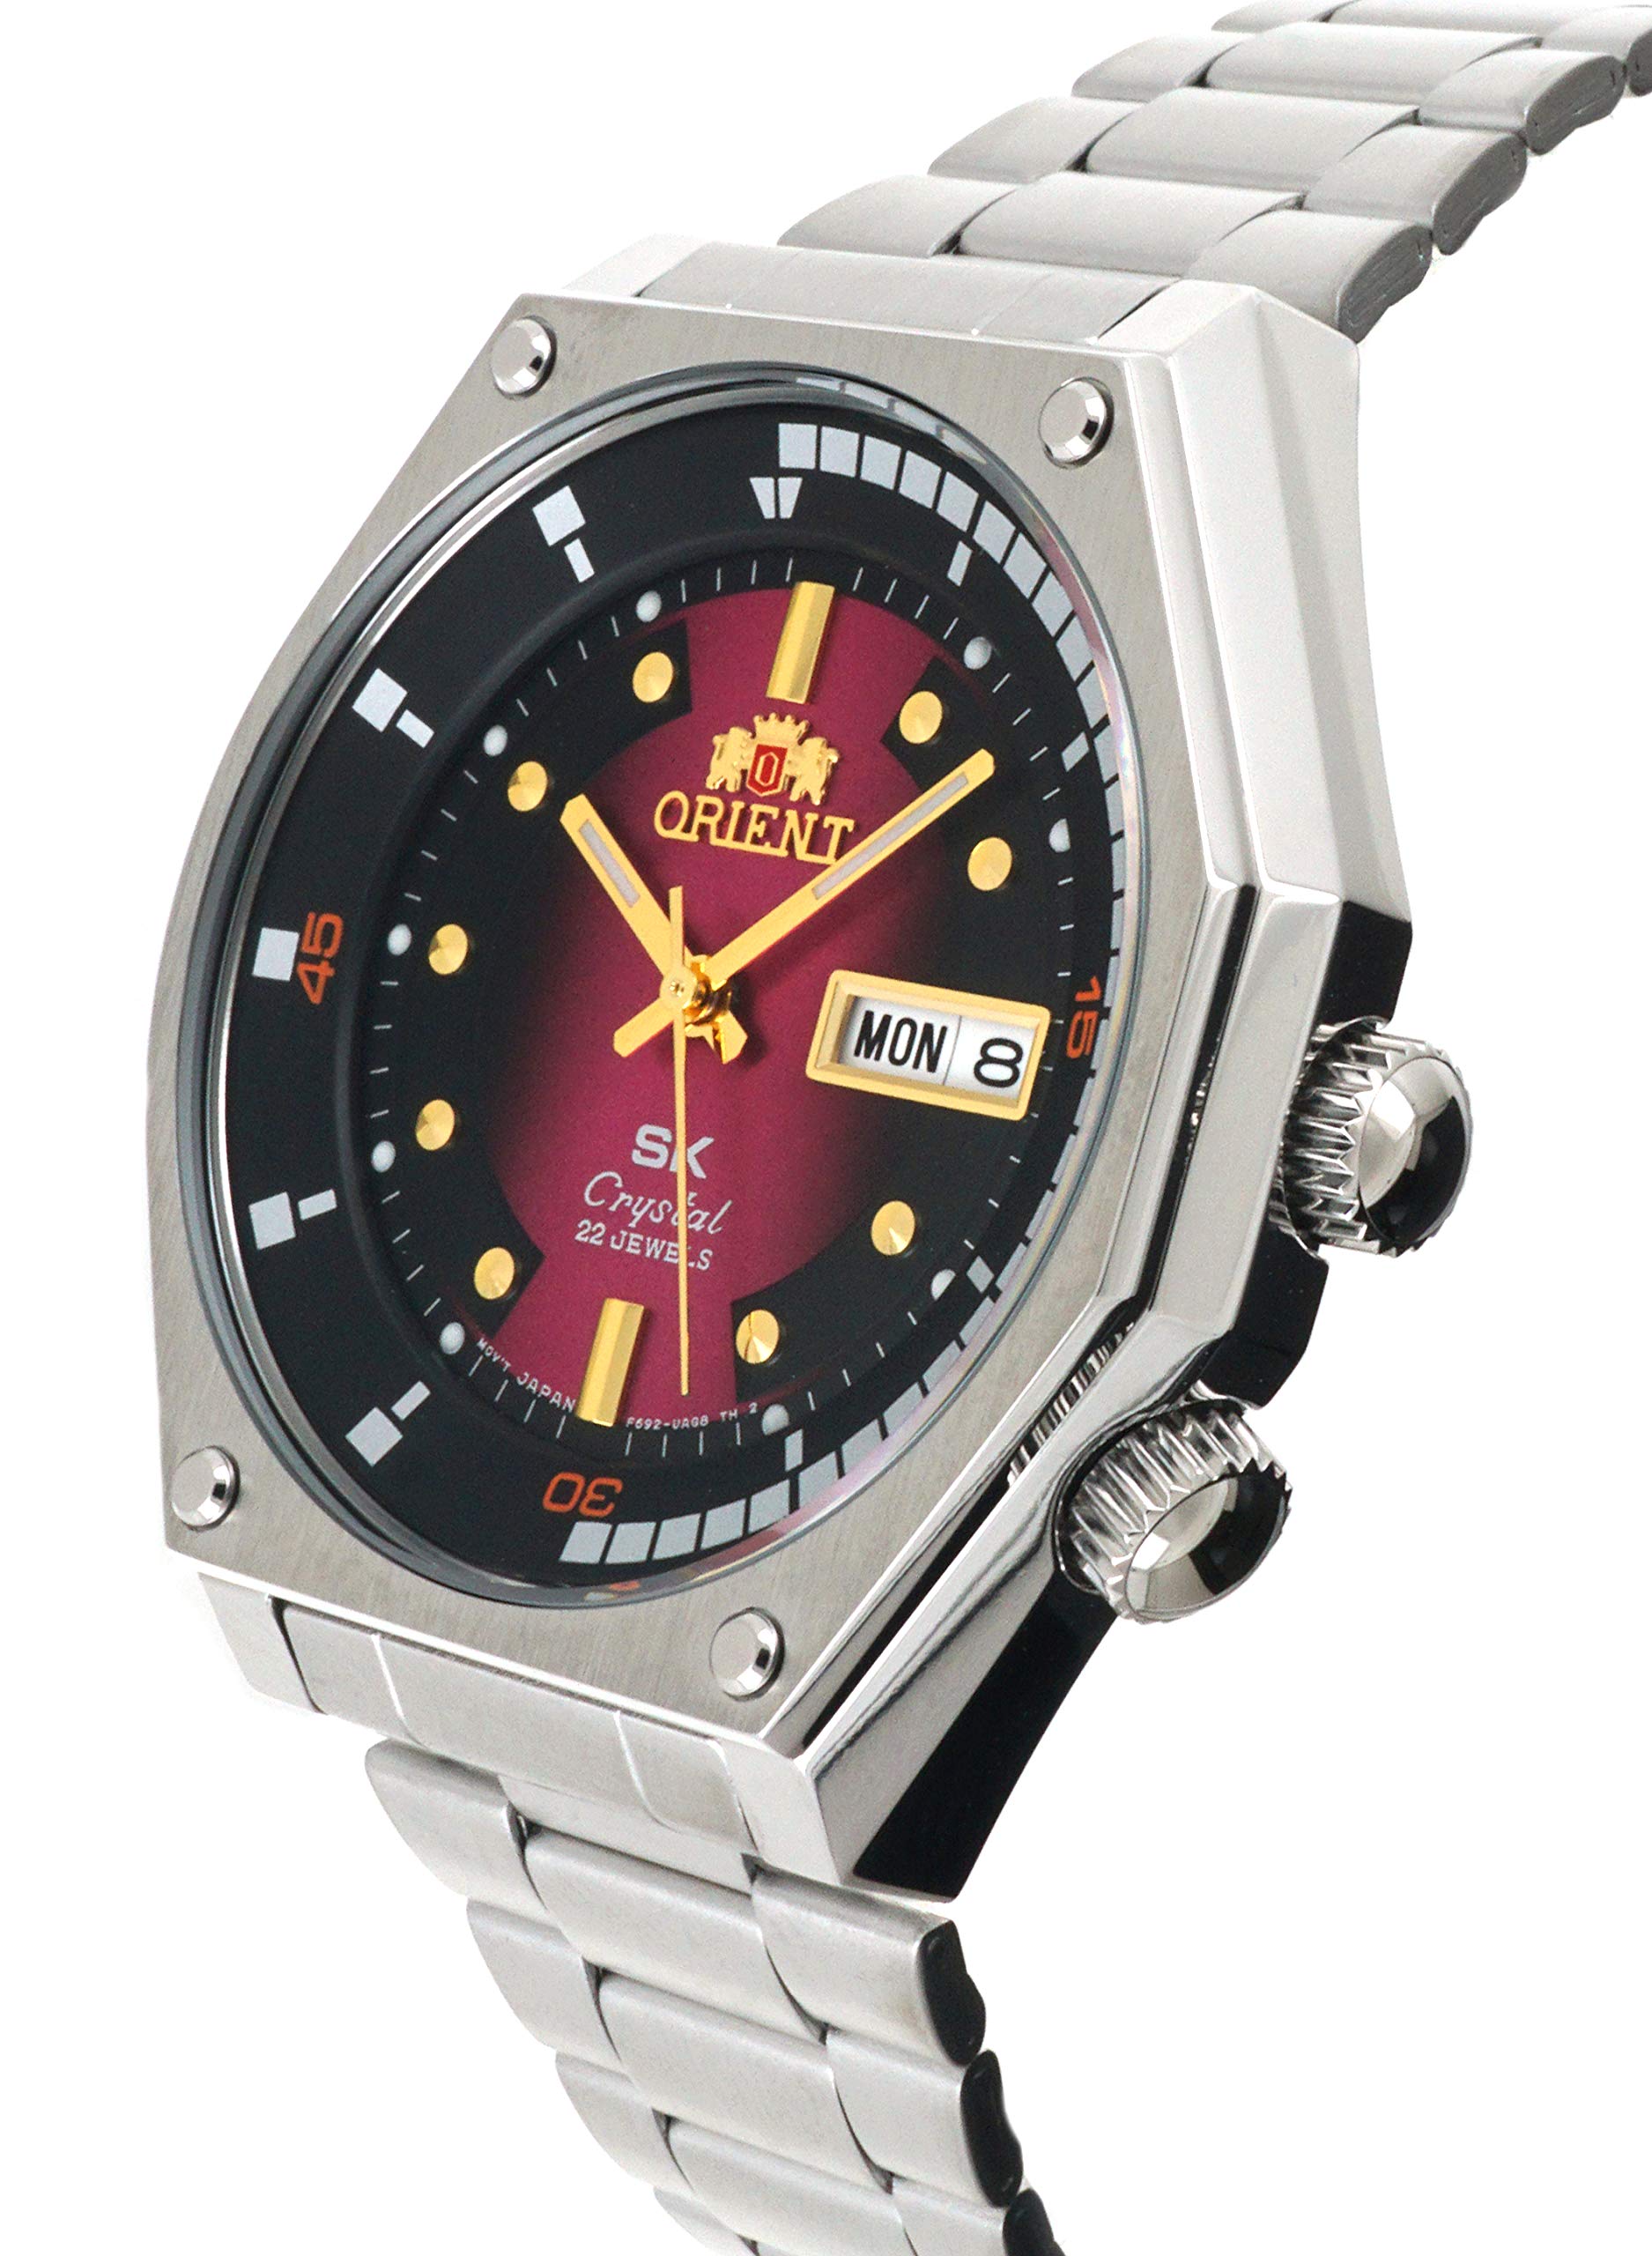 お買い得！】 E-mono shop Orient オリエント 自動巻き腕時計